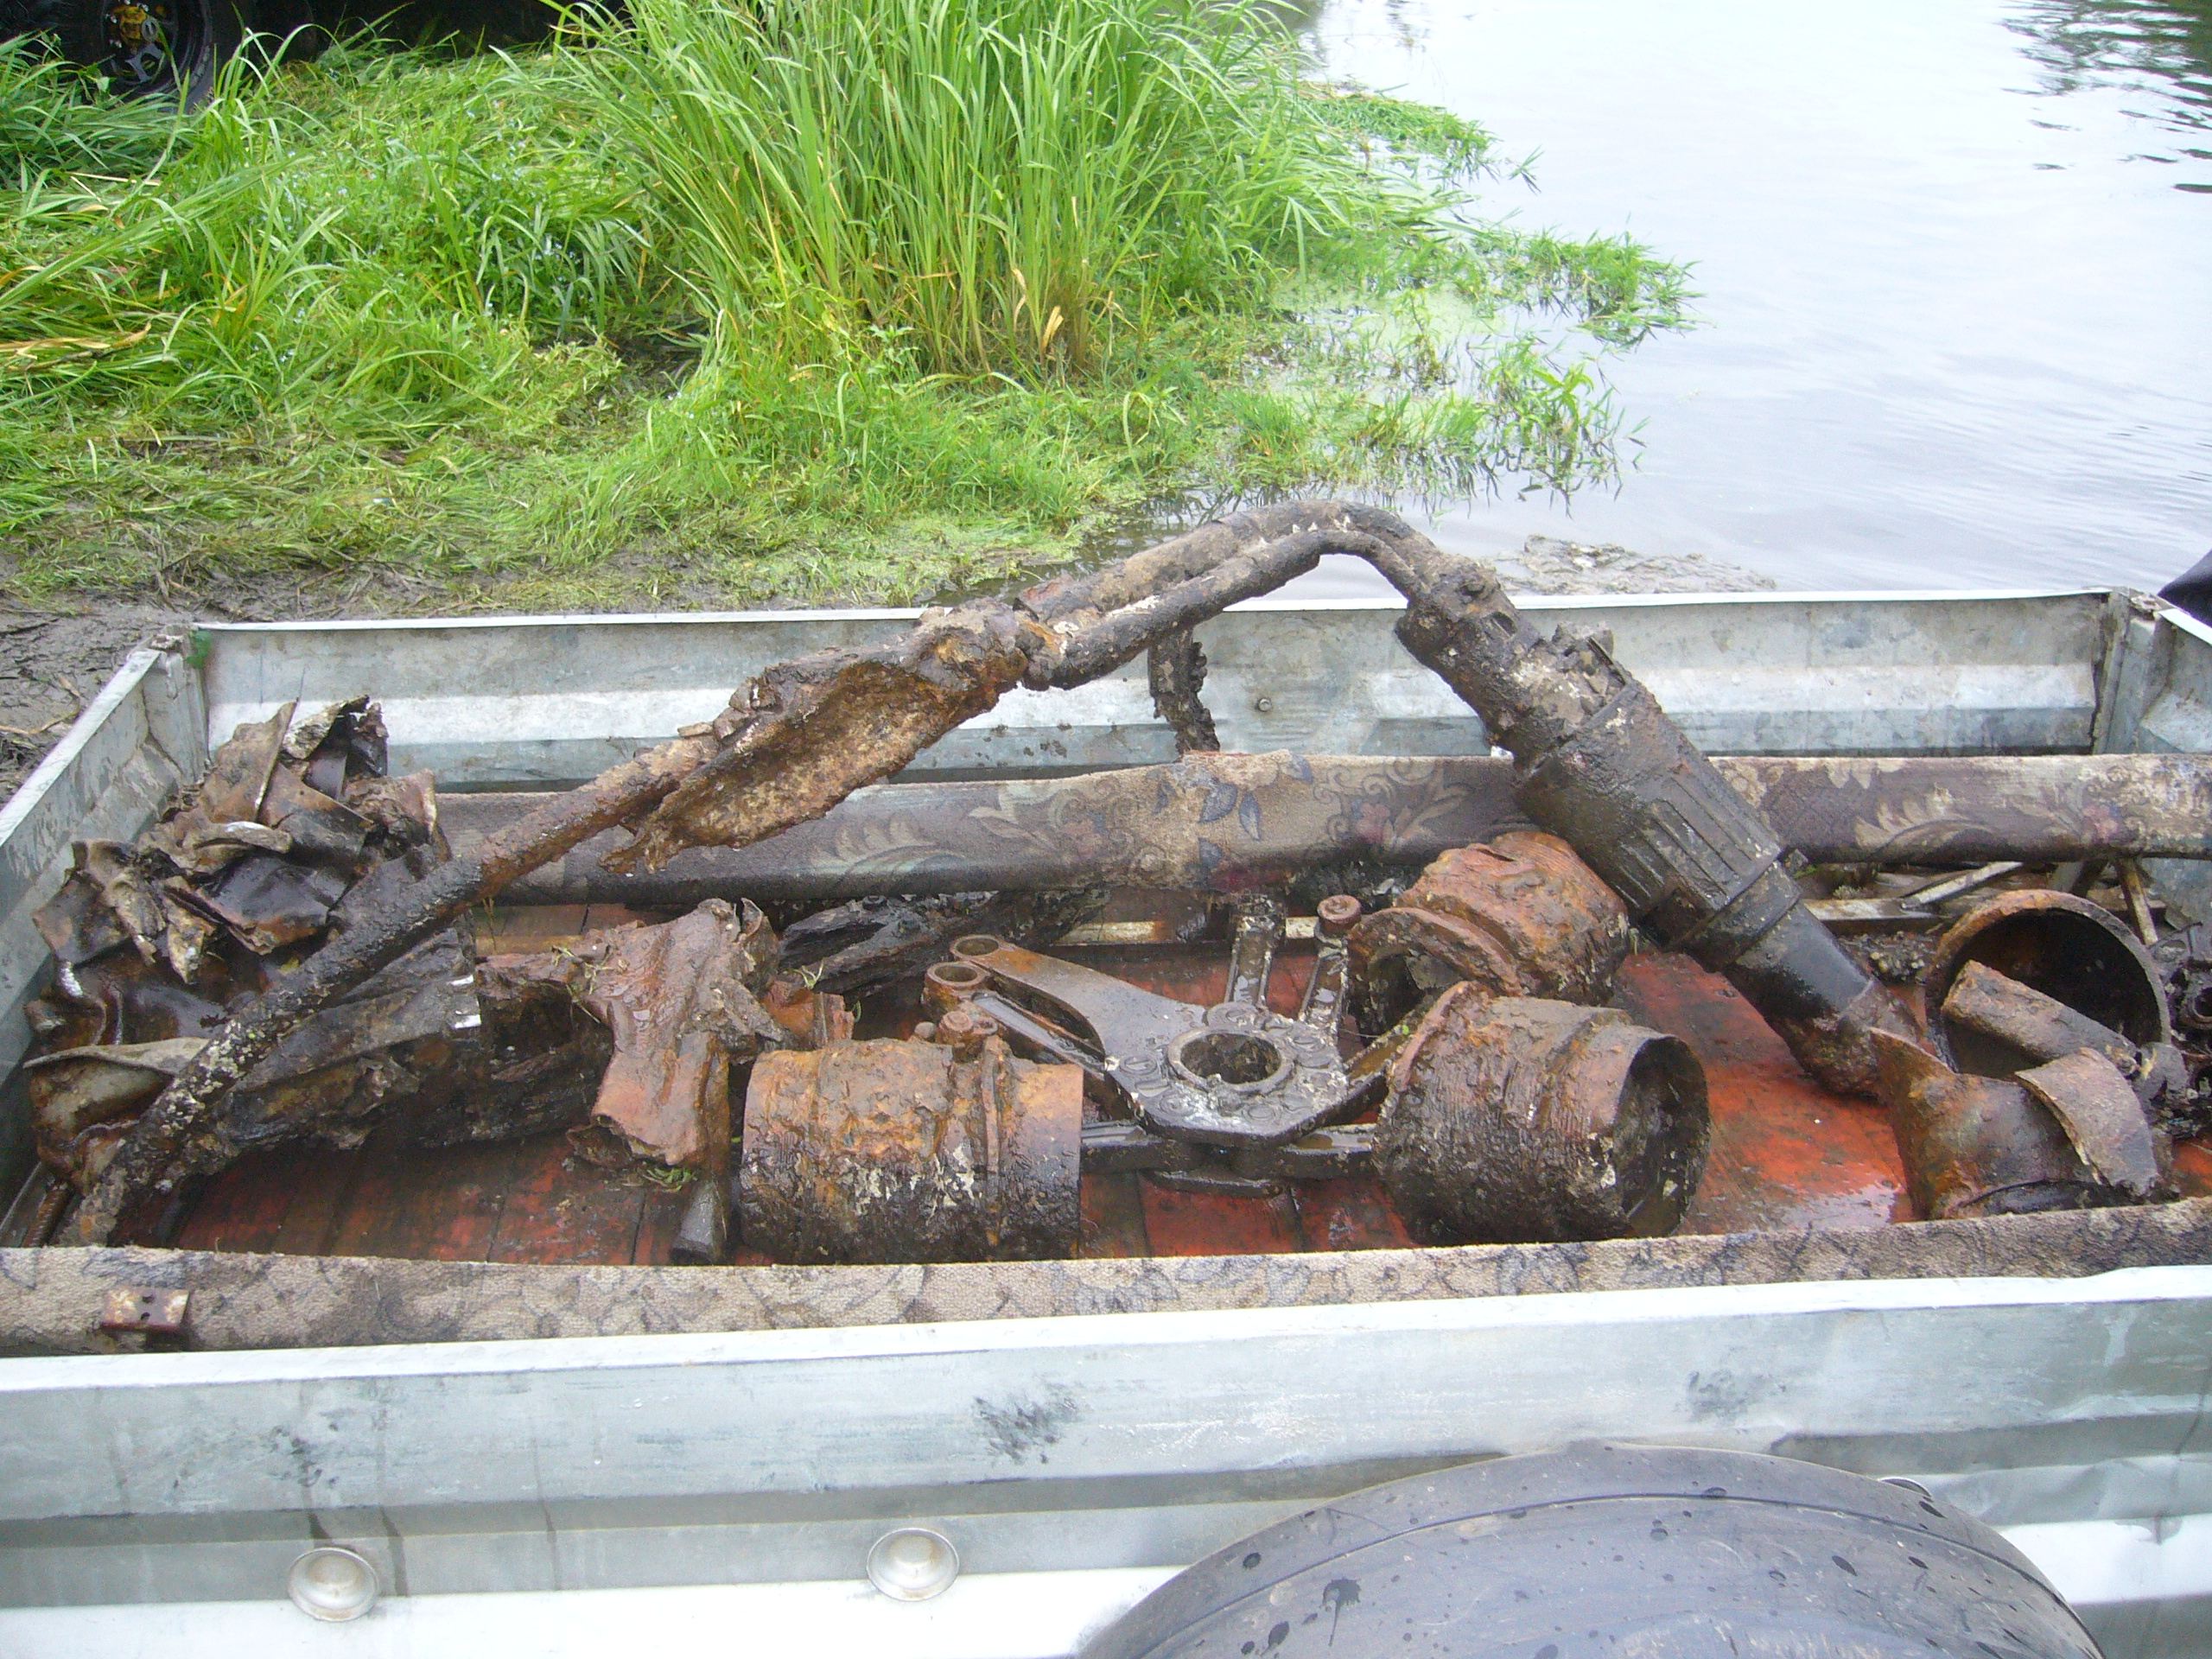 Фрагменты самолета ЛА-5 найденные на дне реки Зуша.